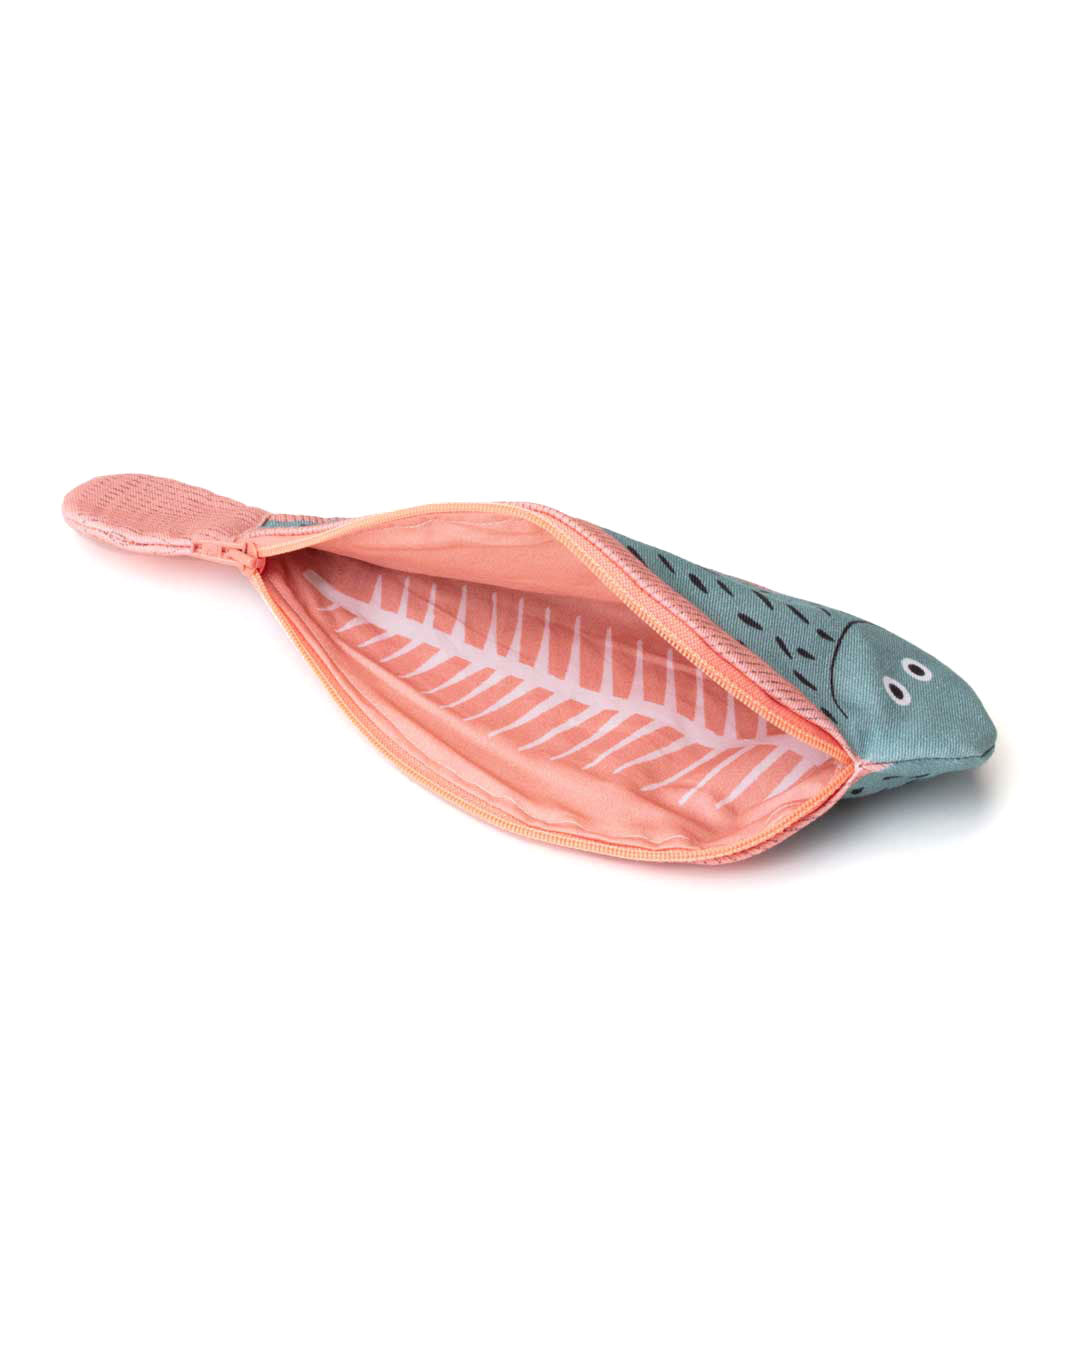 fish shaped case sole zipper